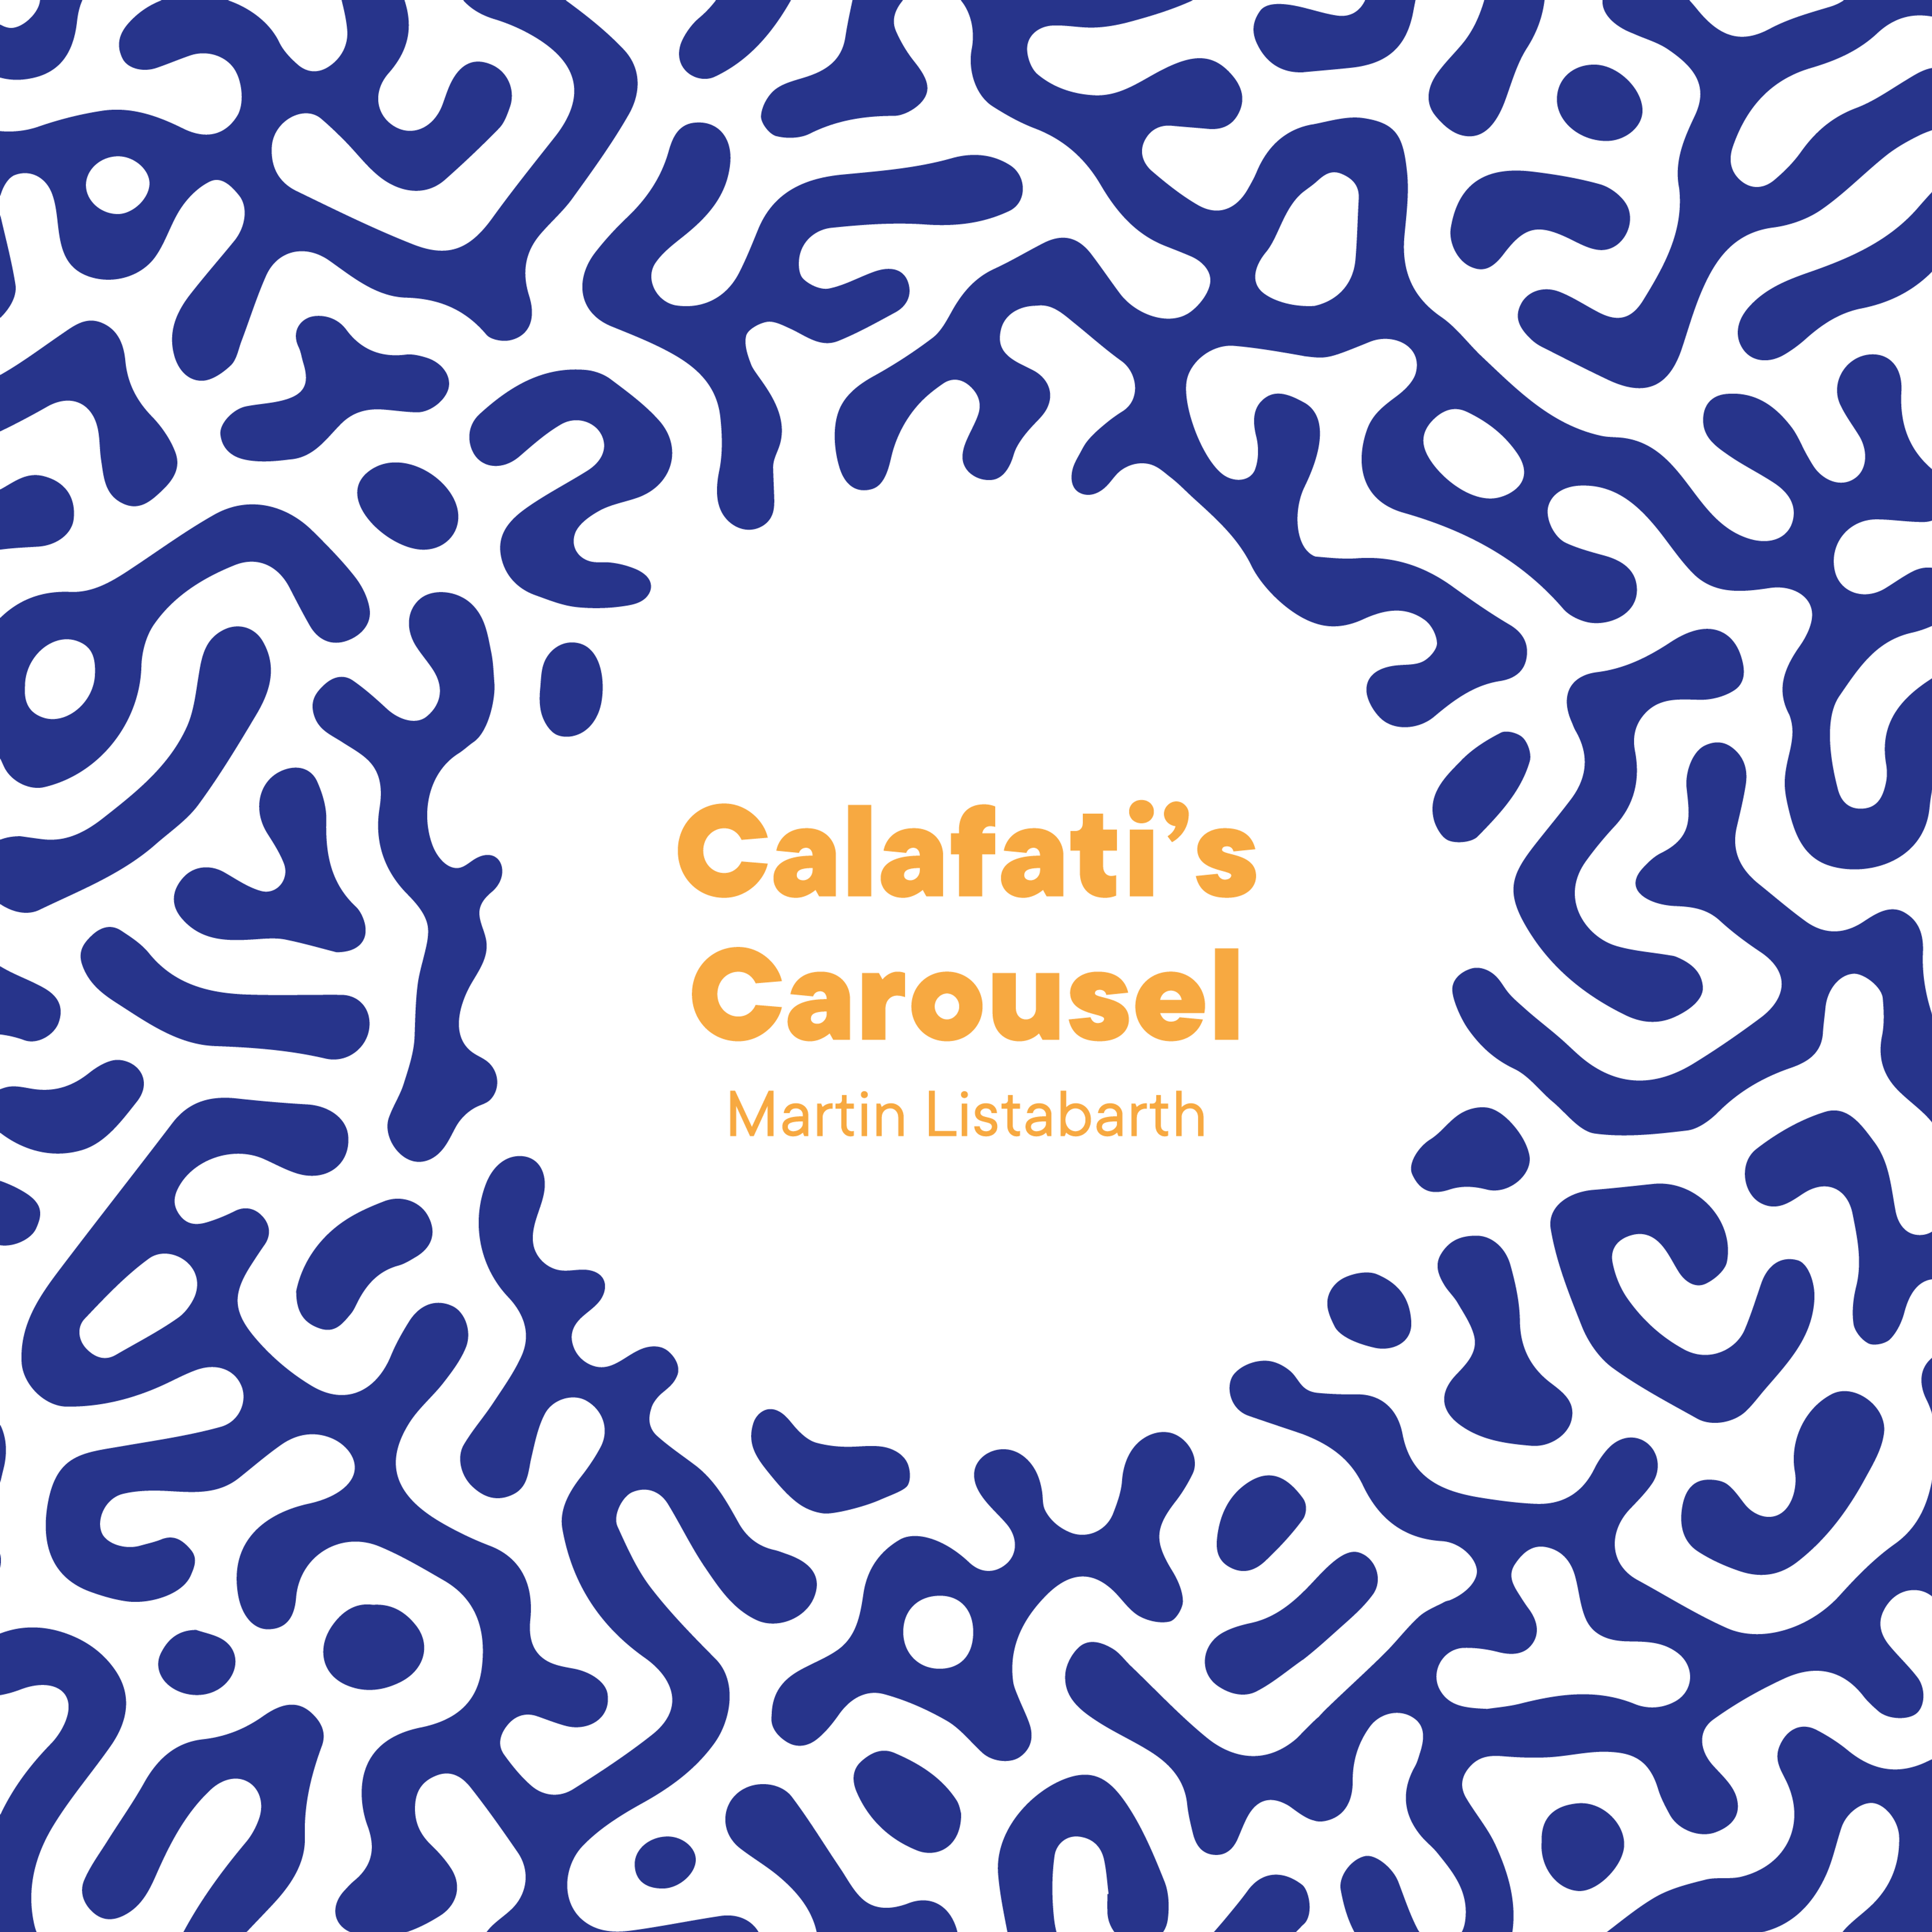 Das Artwork zur neuen Single "Calafati's Carousel"